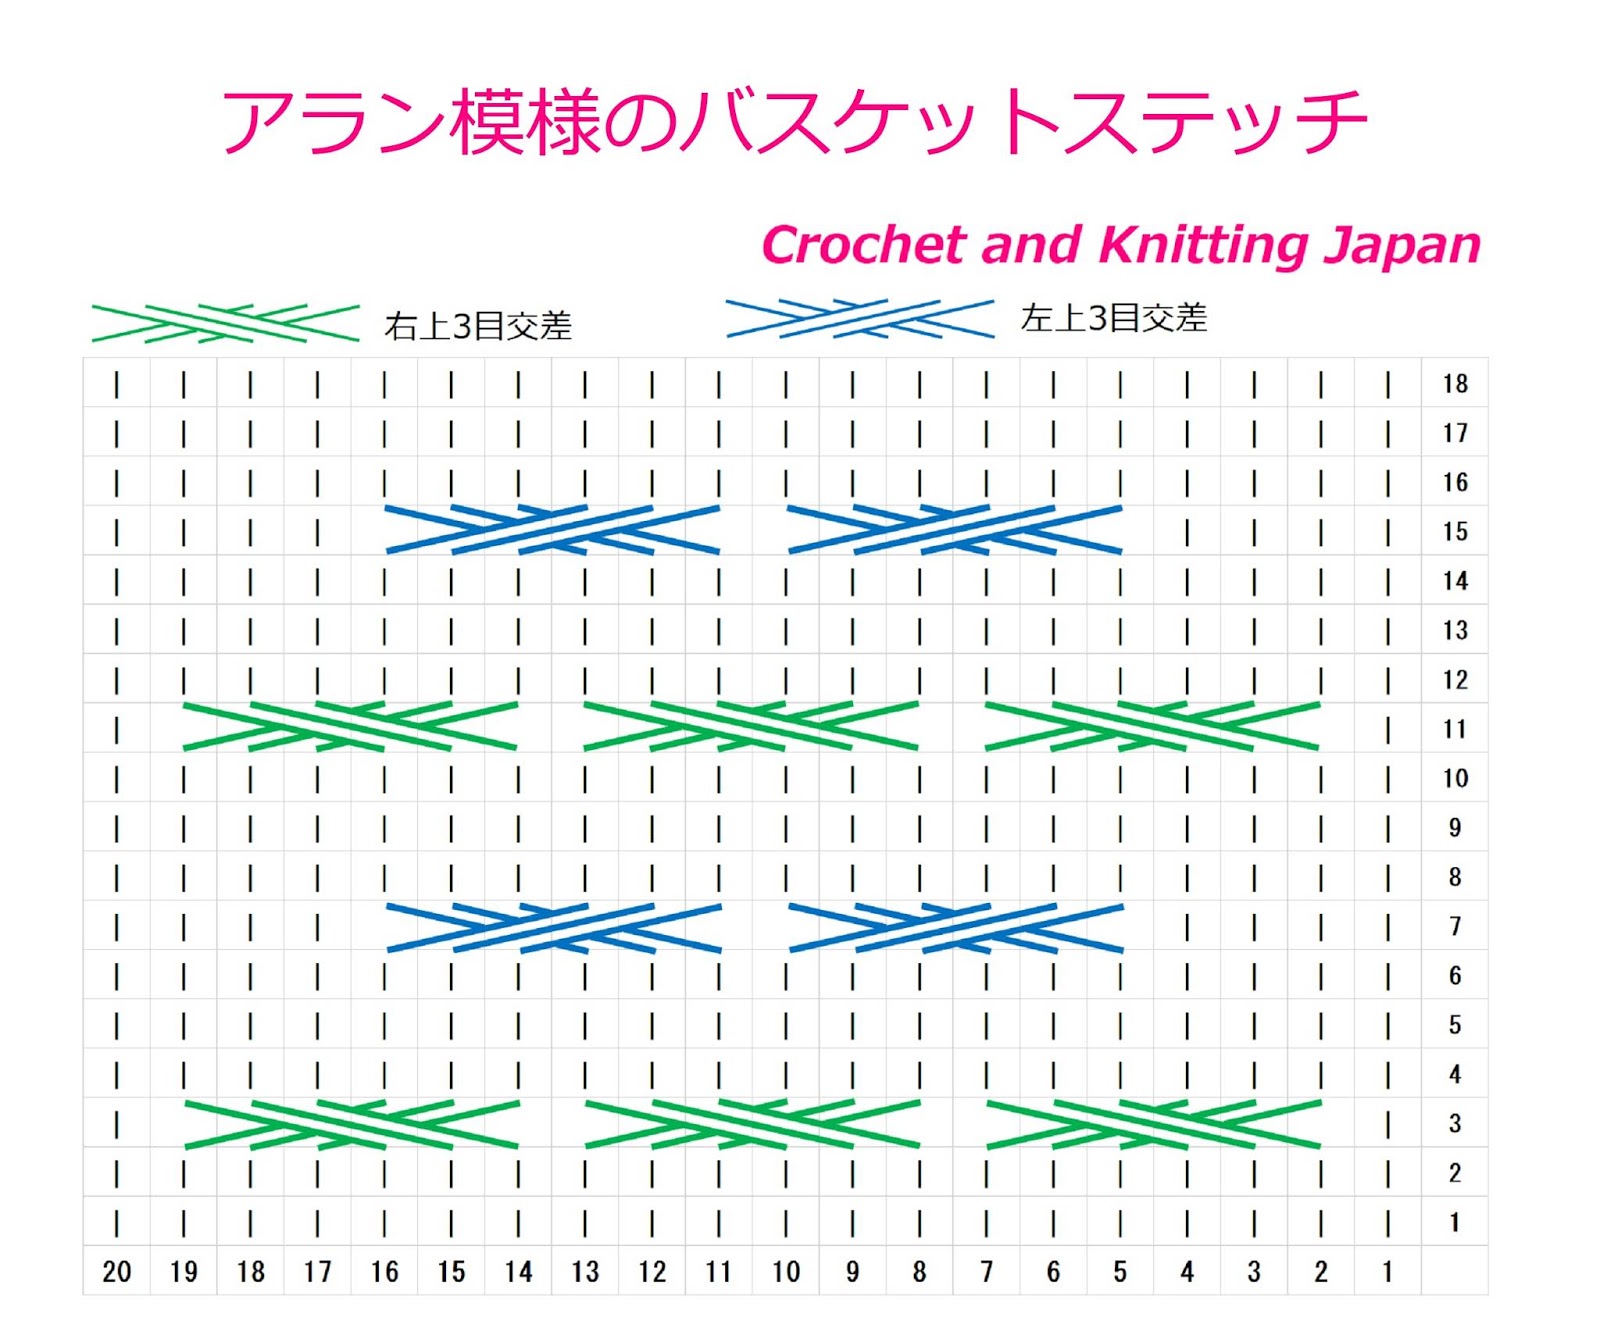 編み アラン 図 模様 【編み図】ベビーアルパカで編む アラン模様のセーター